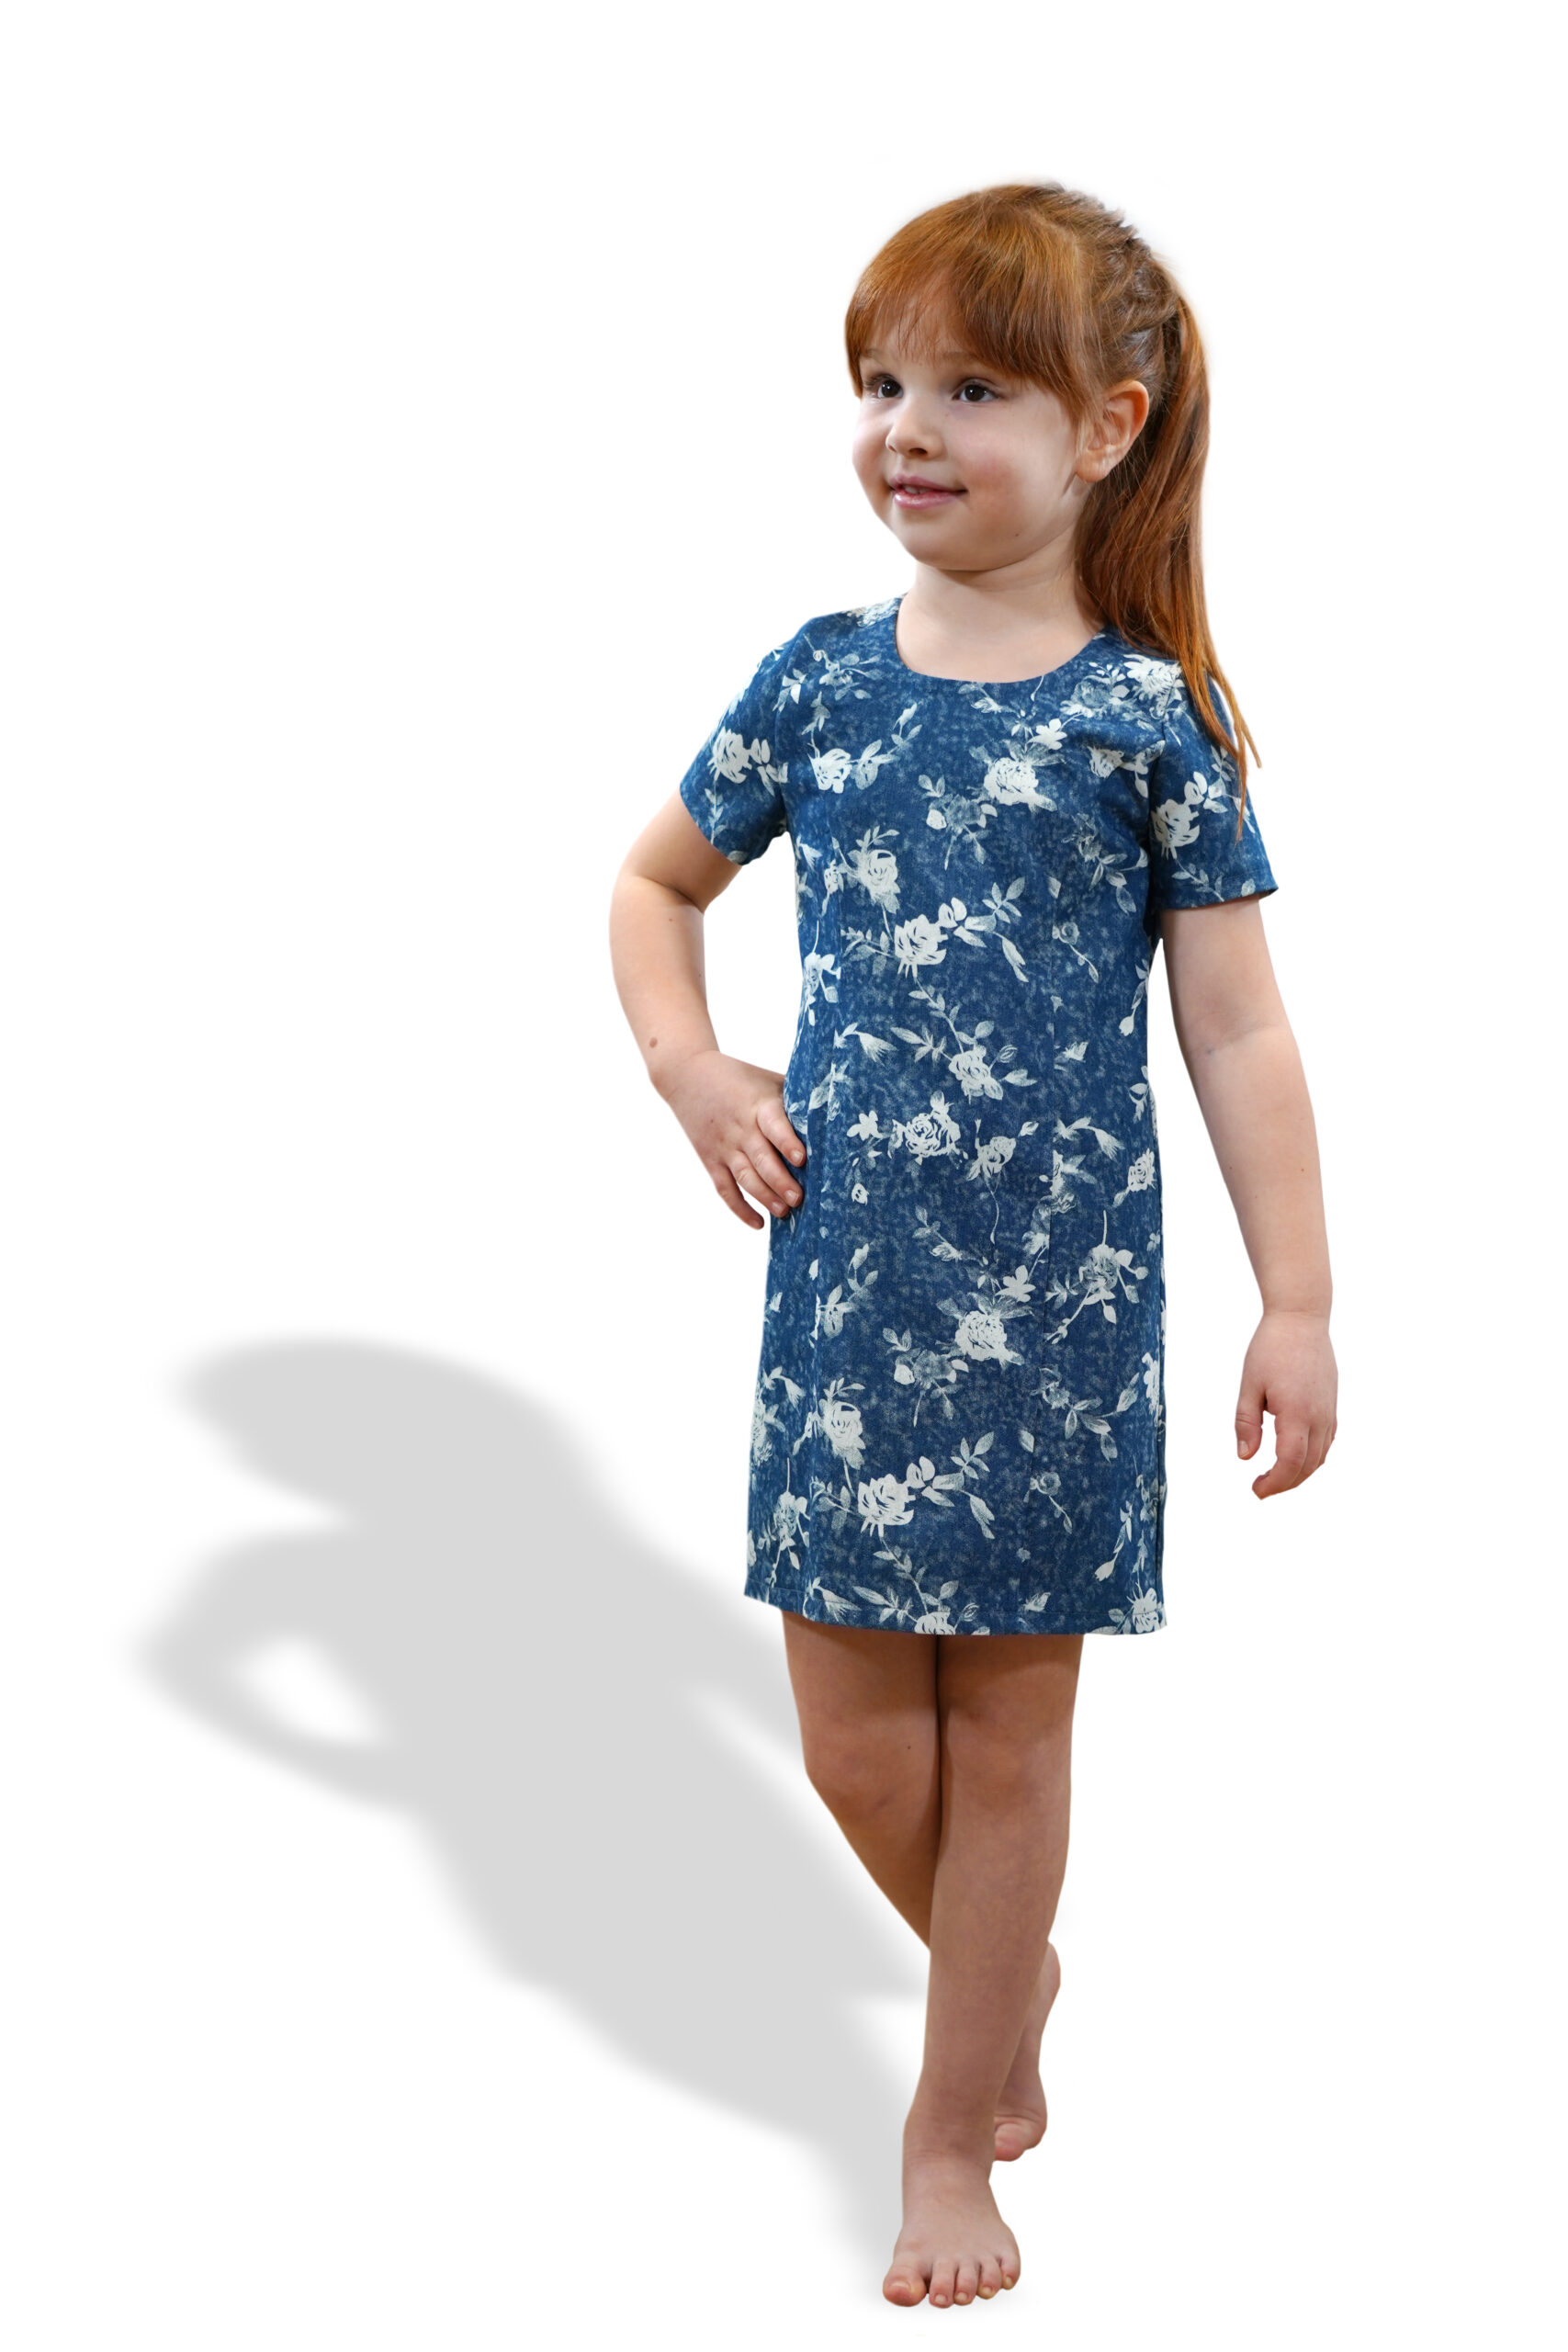 Papierschnittmuster Etui-Kleid Kinder - Gr. 74-164 - Nähanleitung und Schnittmuster von Fadenkäfer